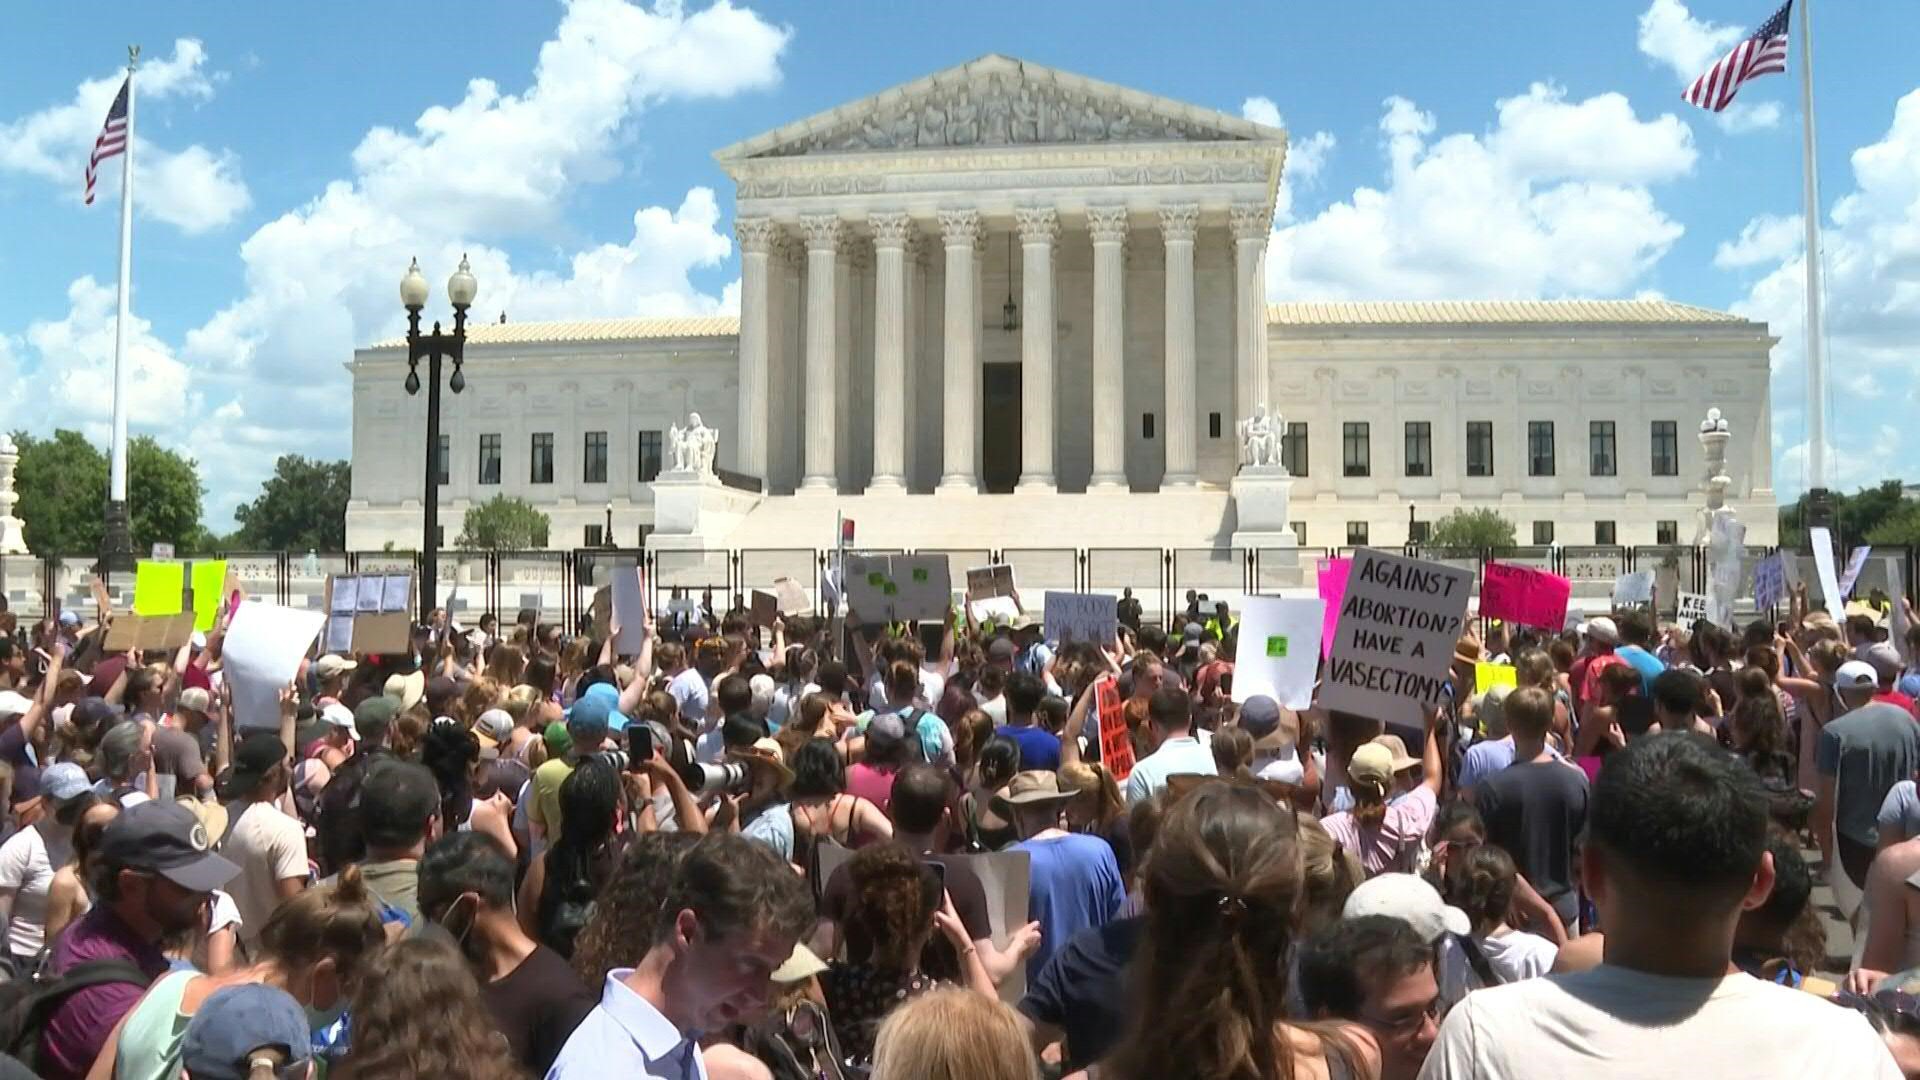 Los partidarios del derecho al aborto se movilizaron por todo Estados Unidos contra el fallo de la Corte Suprema